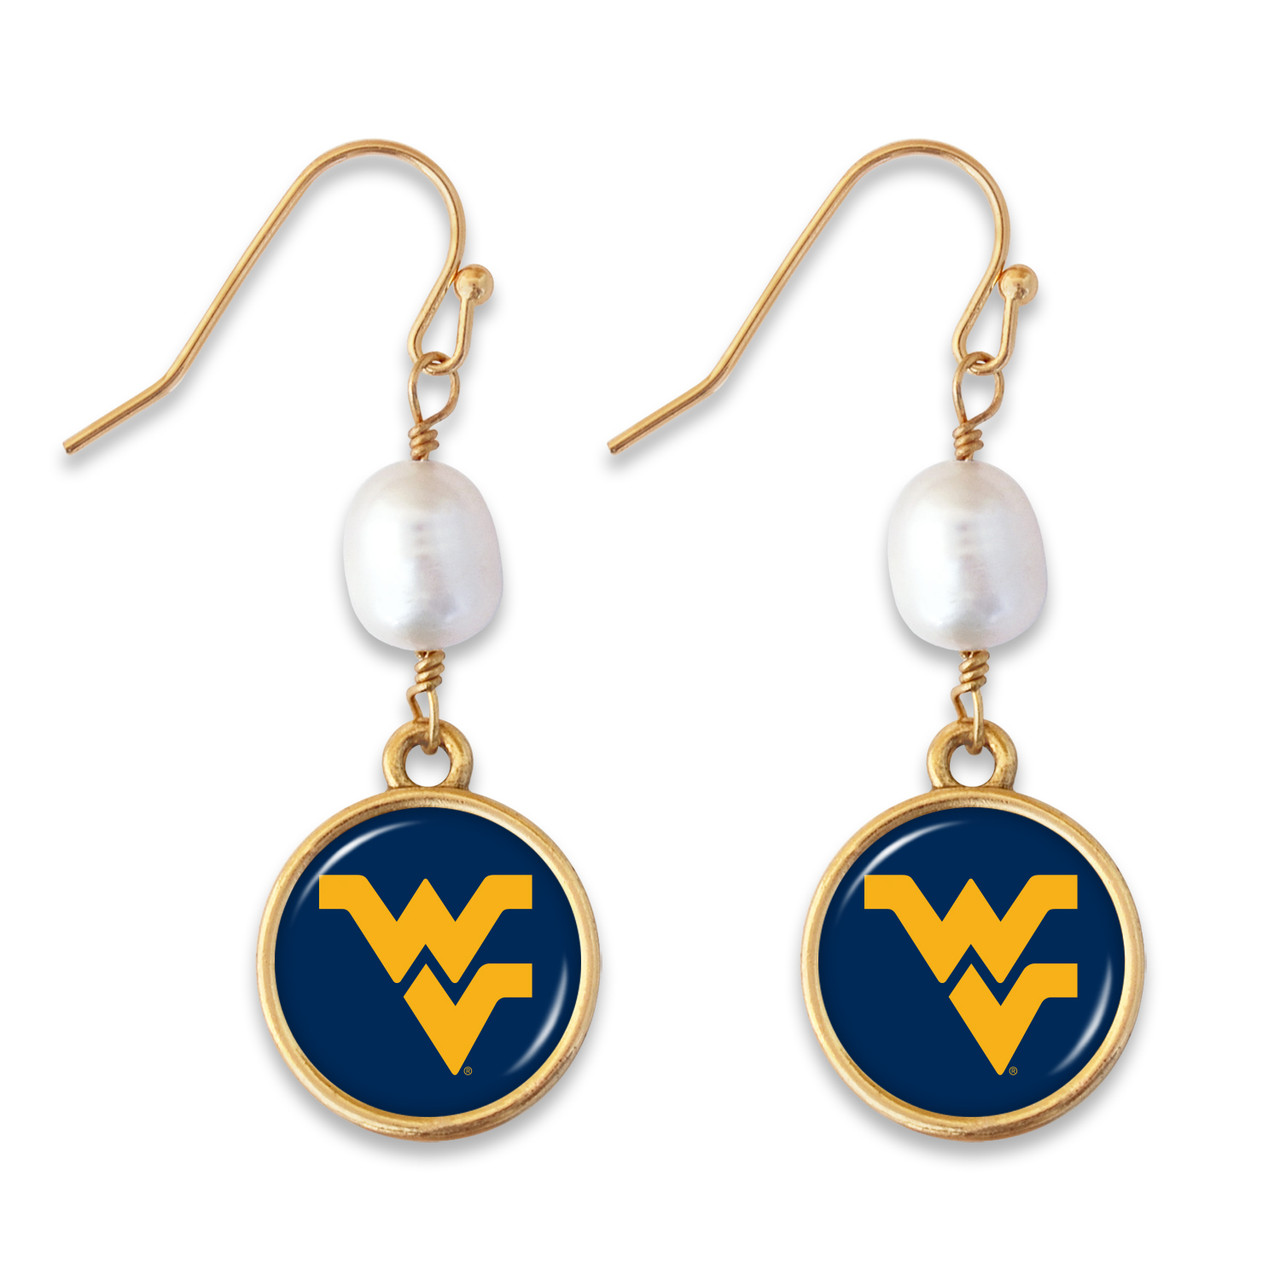 West Virginia Mountaineers Earrings - Diana